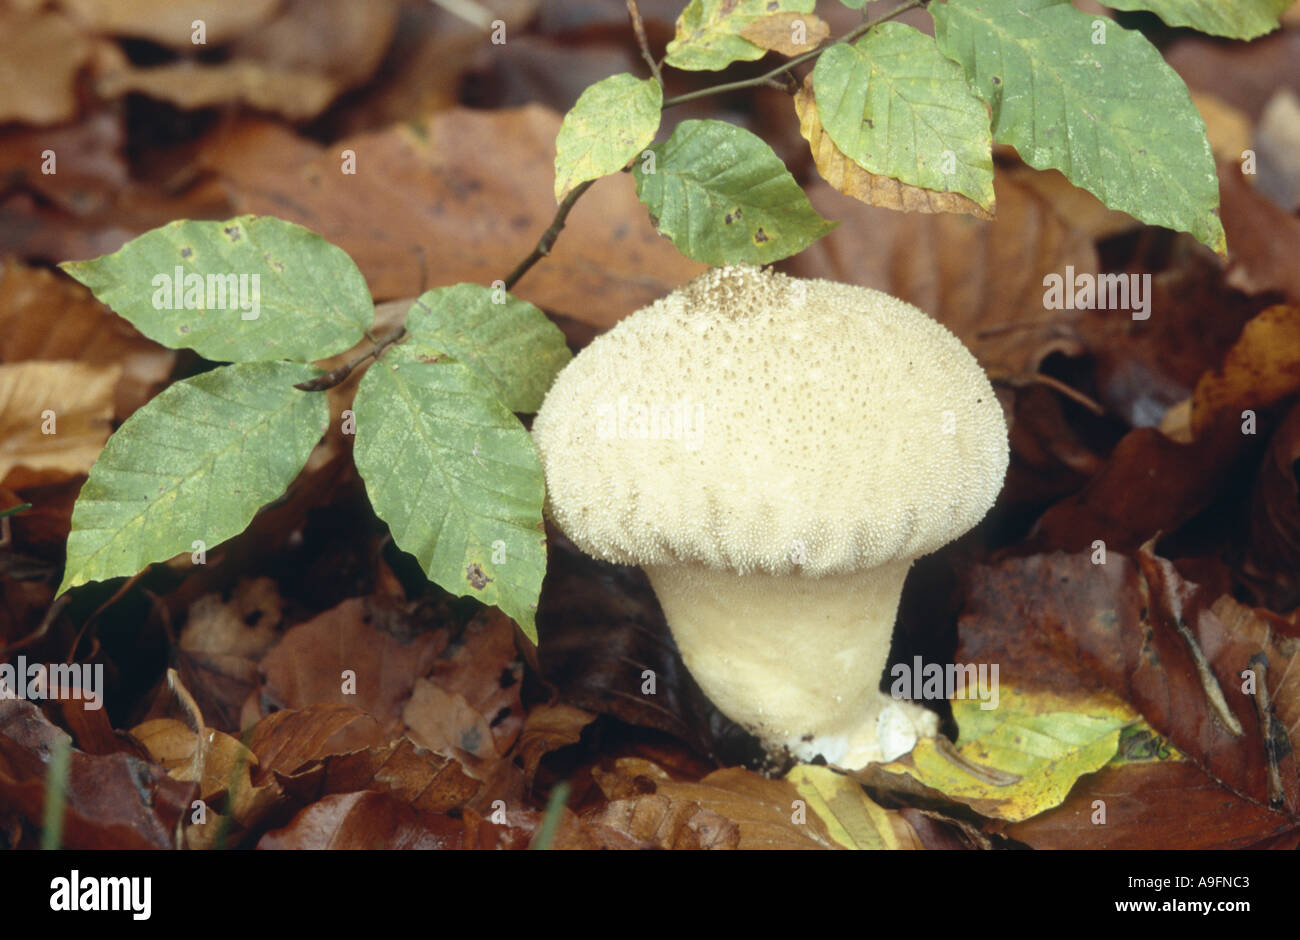 pestle puffball (Calvatia excipuliformis, Calvatia saccata). Stock Photo